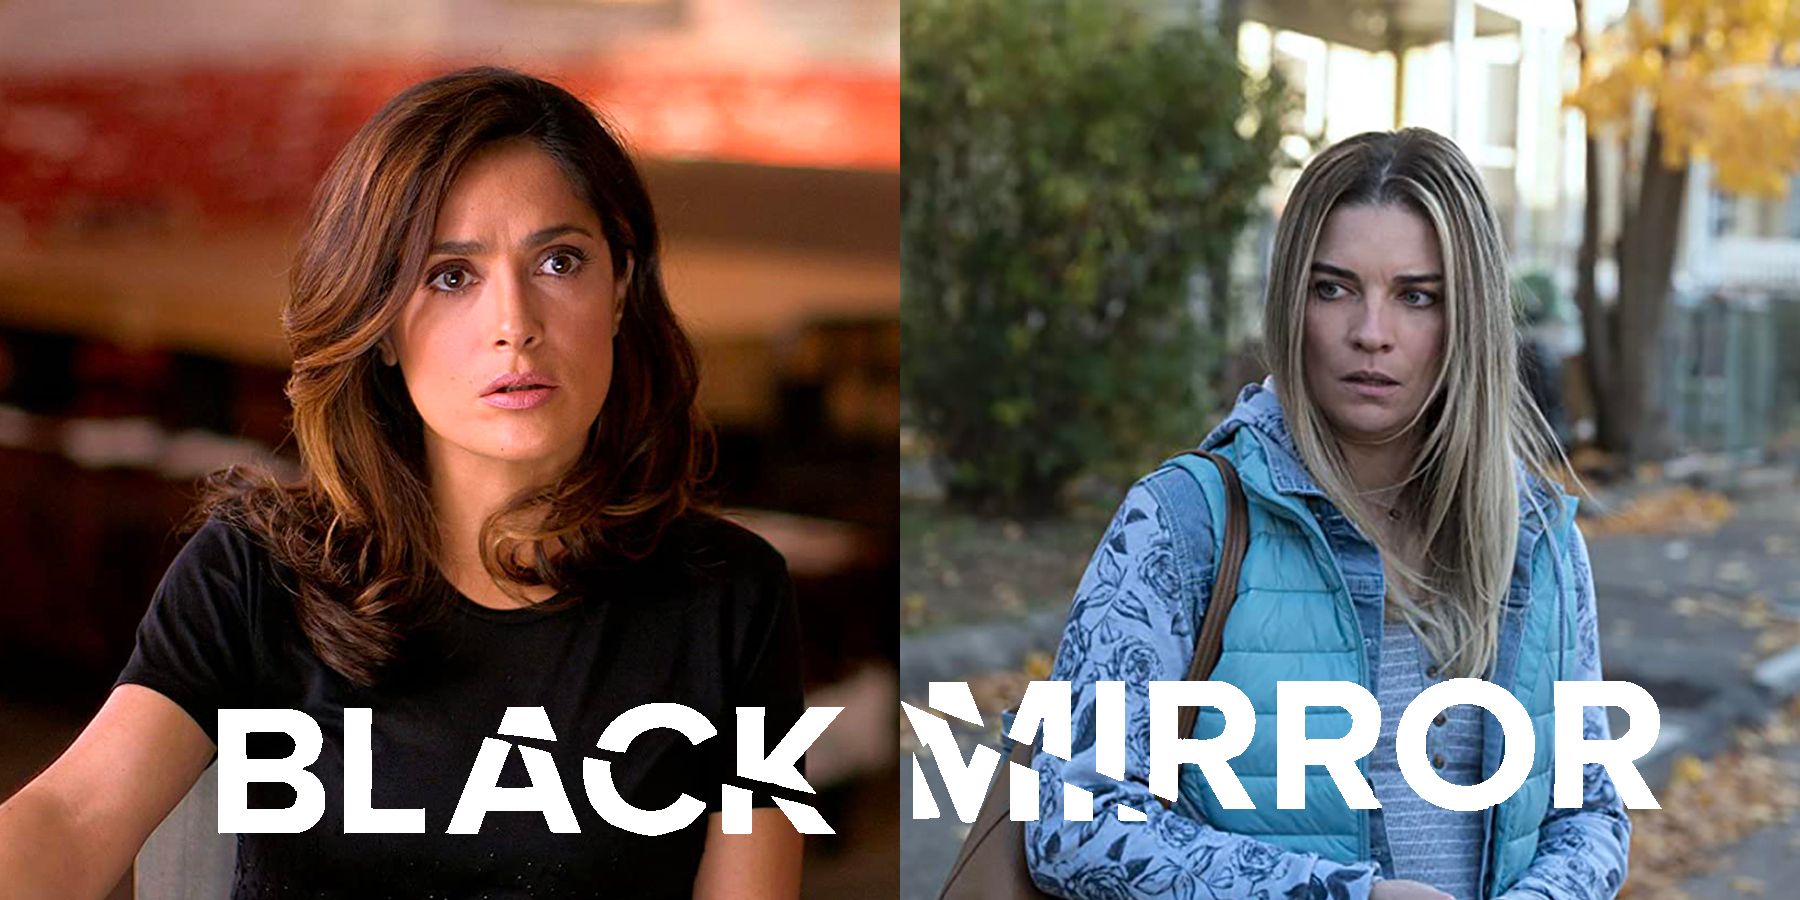 Black Mirror: Season 6 Episode 1 Annie's Zip Jumpsuit